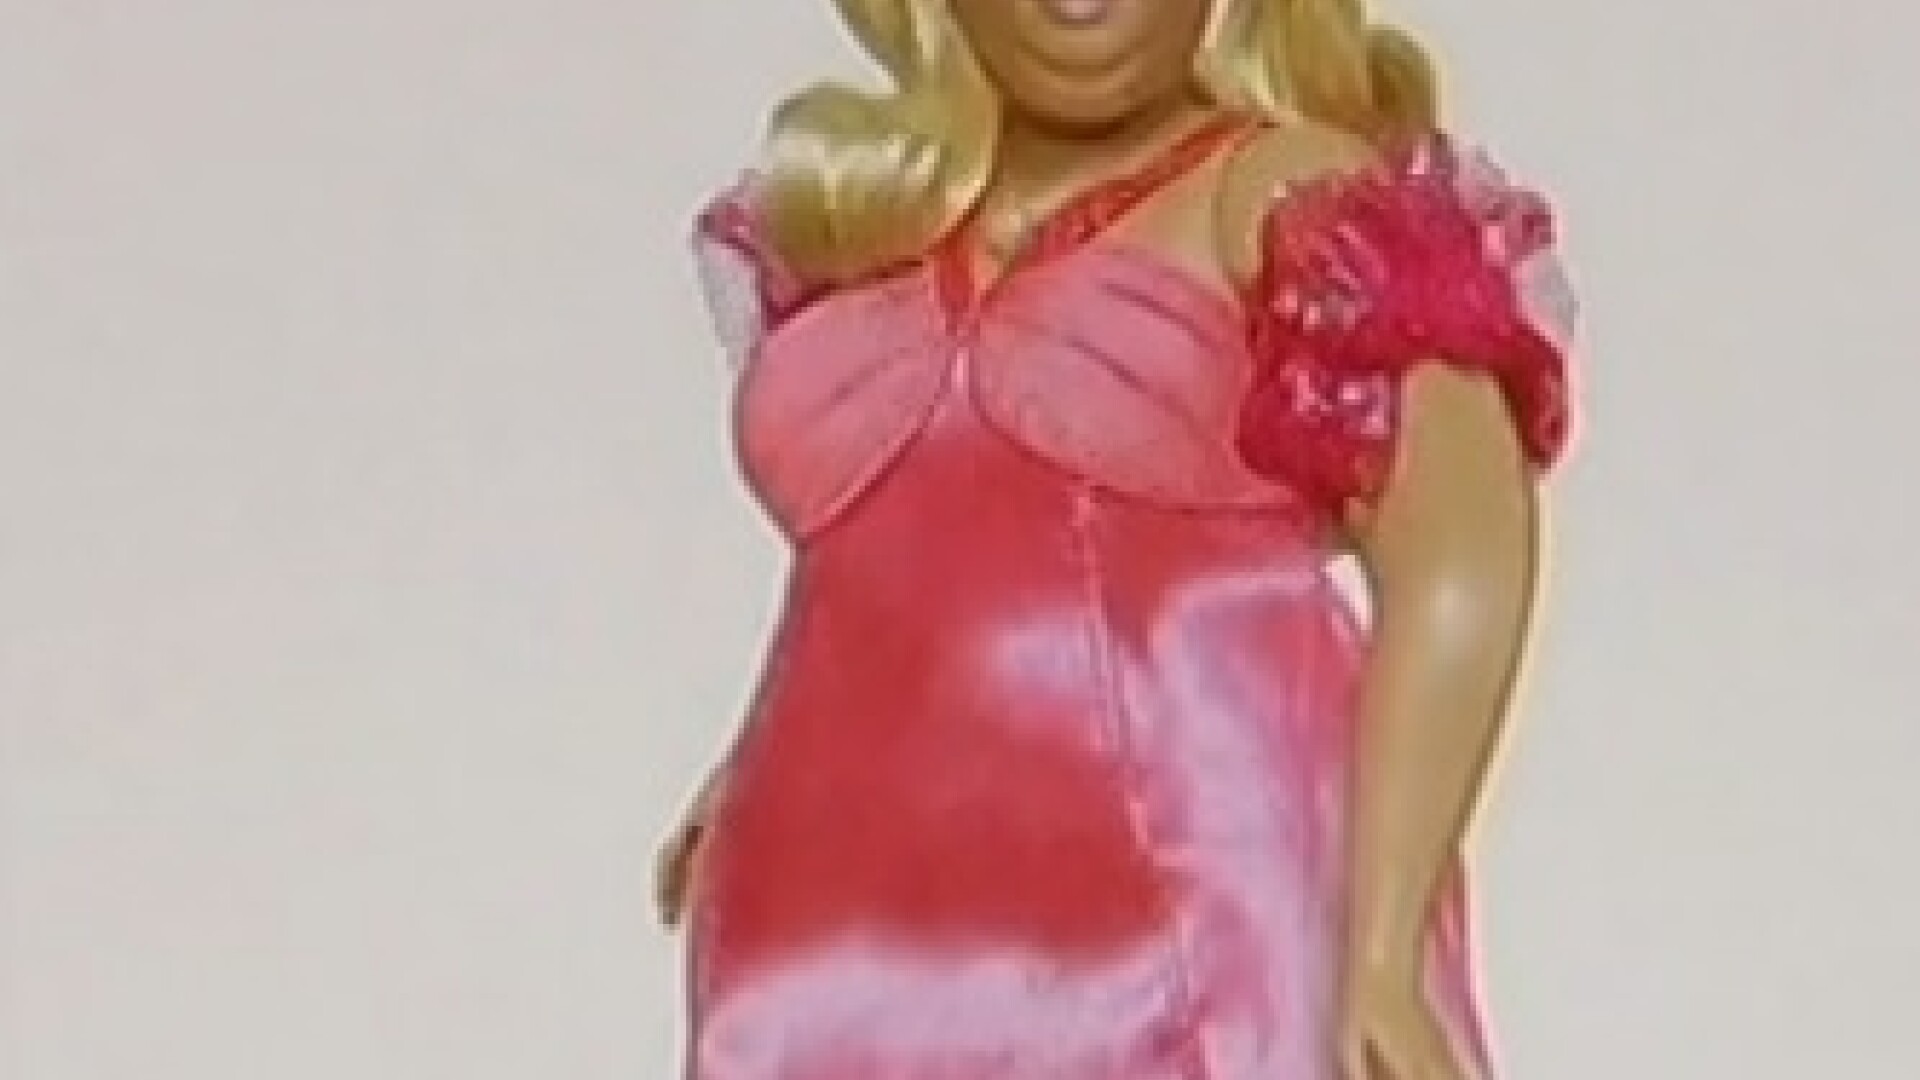 Barbie supraponderala